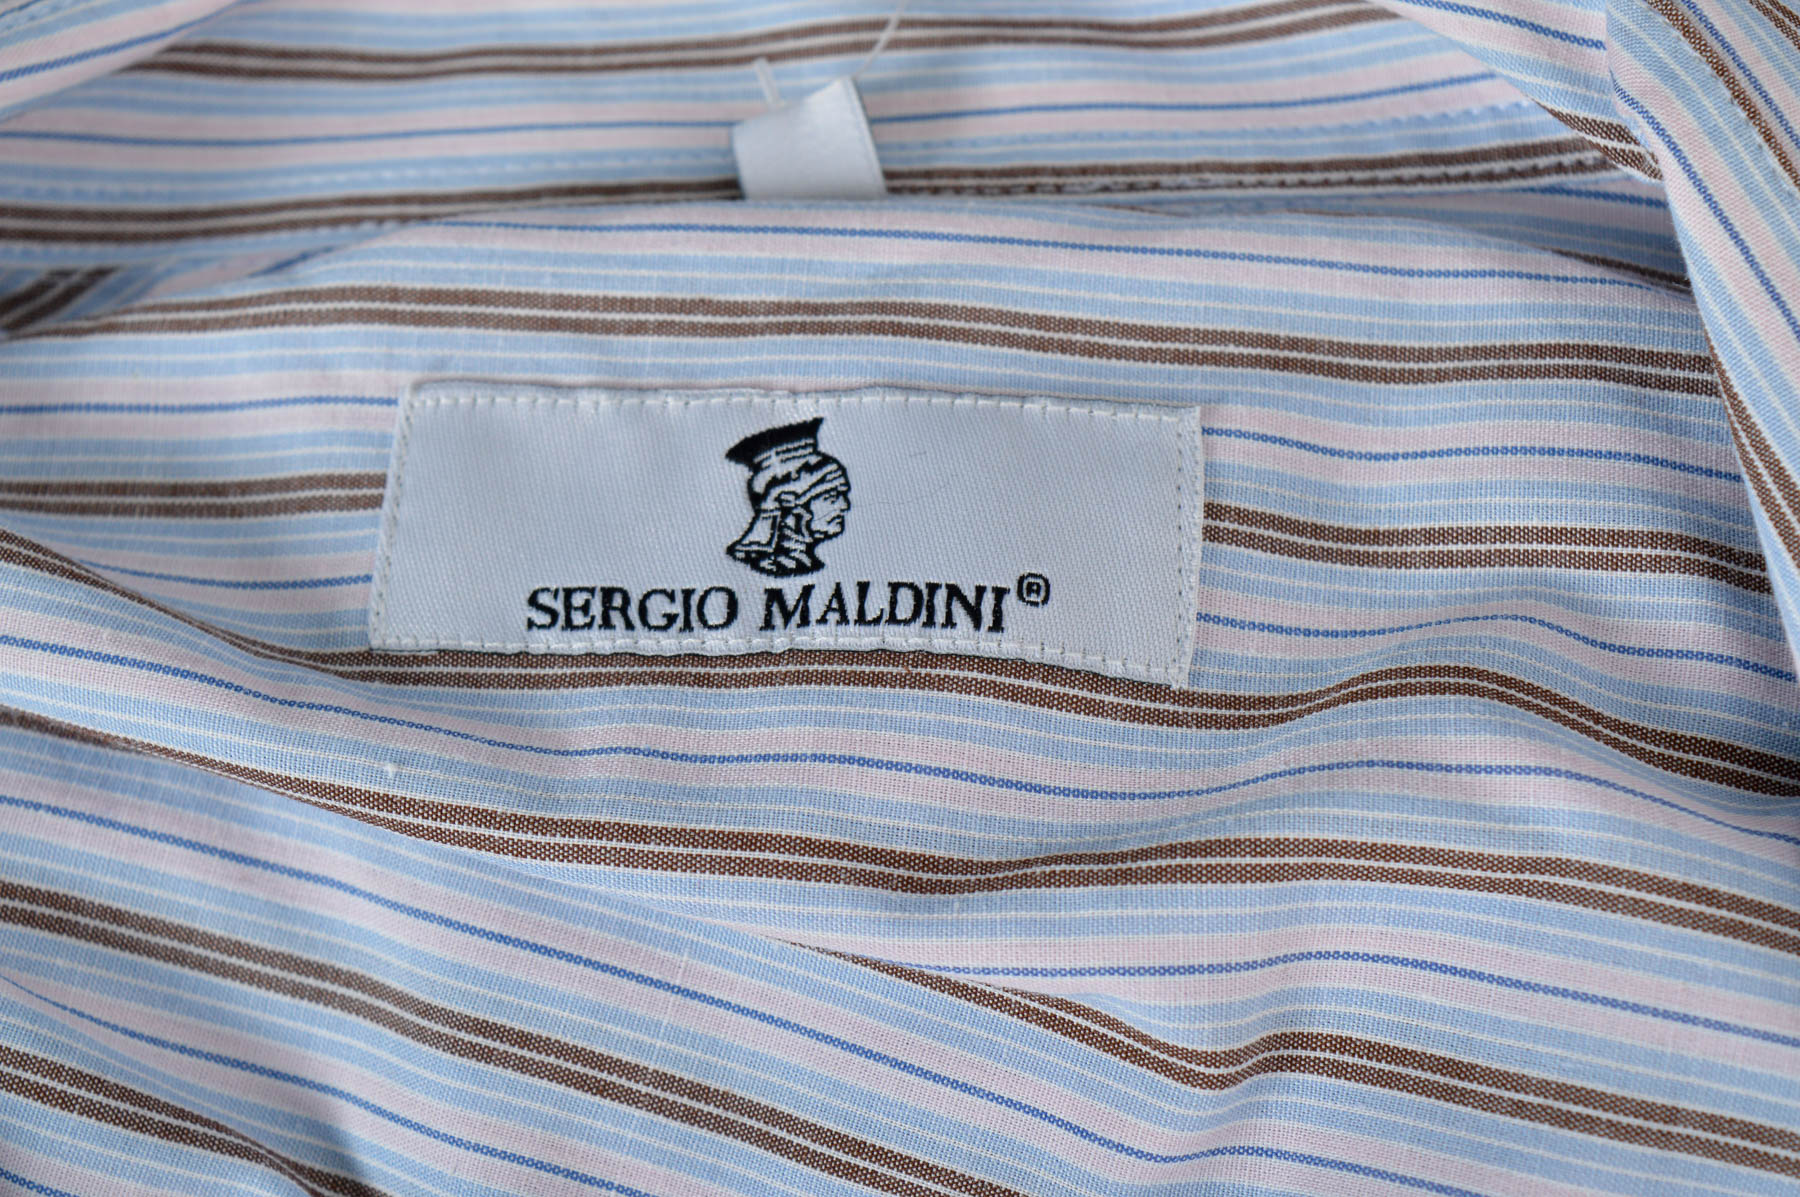 Men's shirt - Sergio Maldini - 2